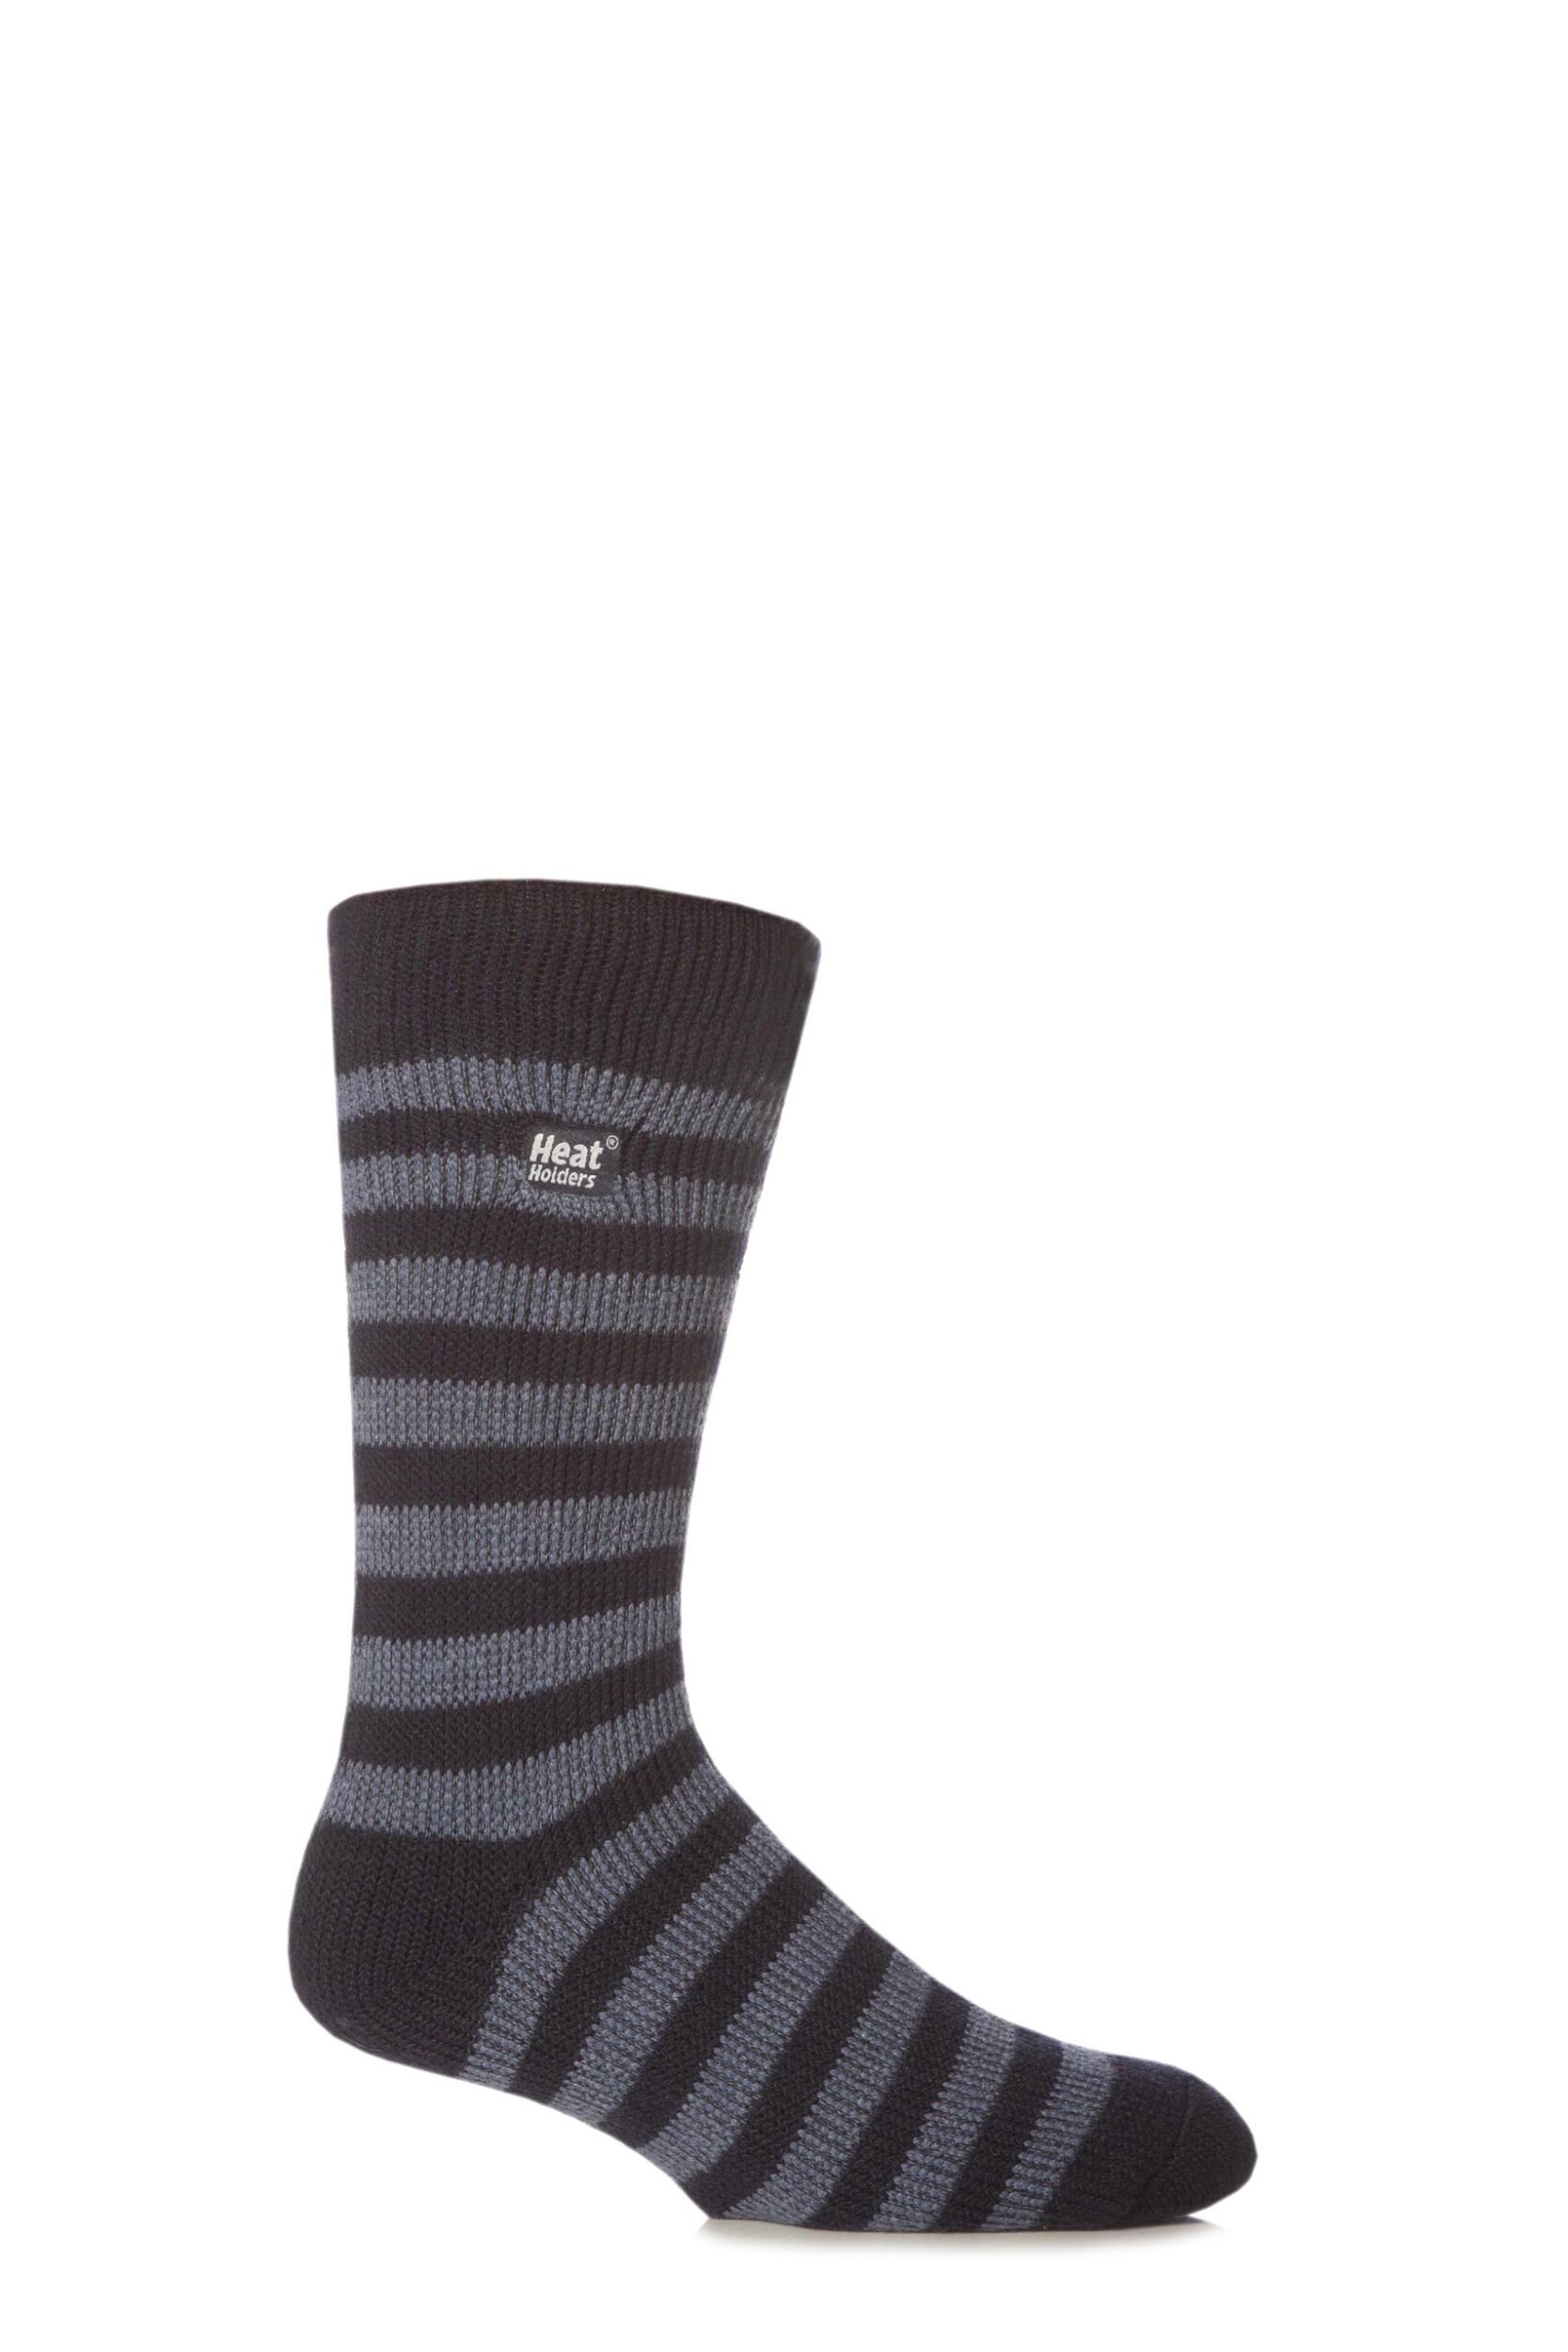 Mens 1 Pair SockShop Heat Holders Two Tone Striped Thermal Socks | eBay